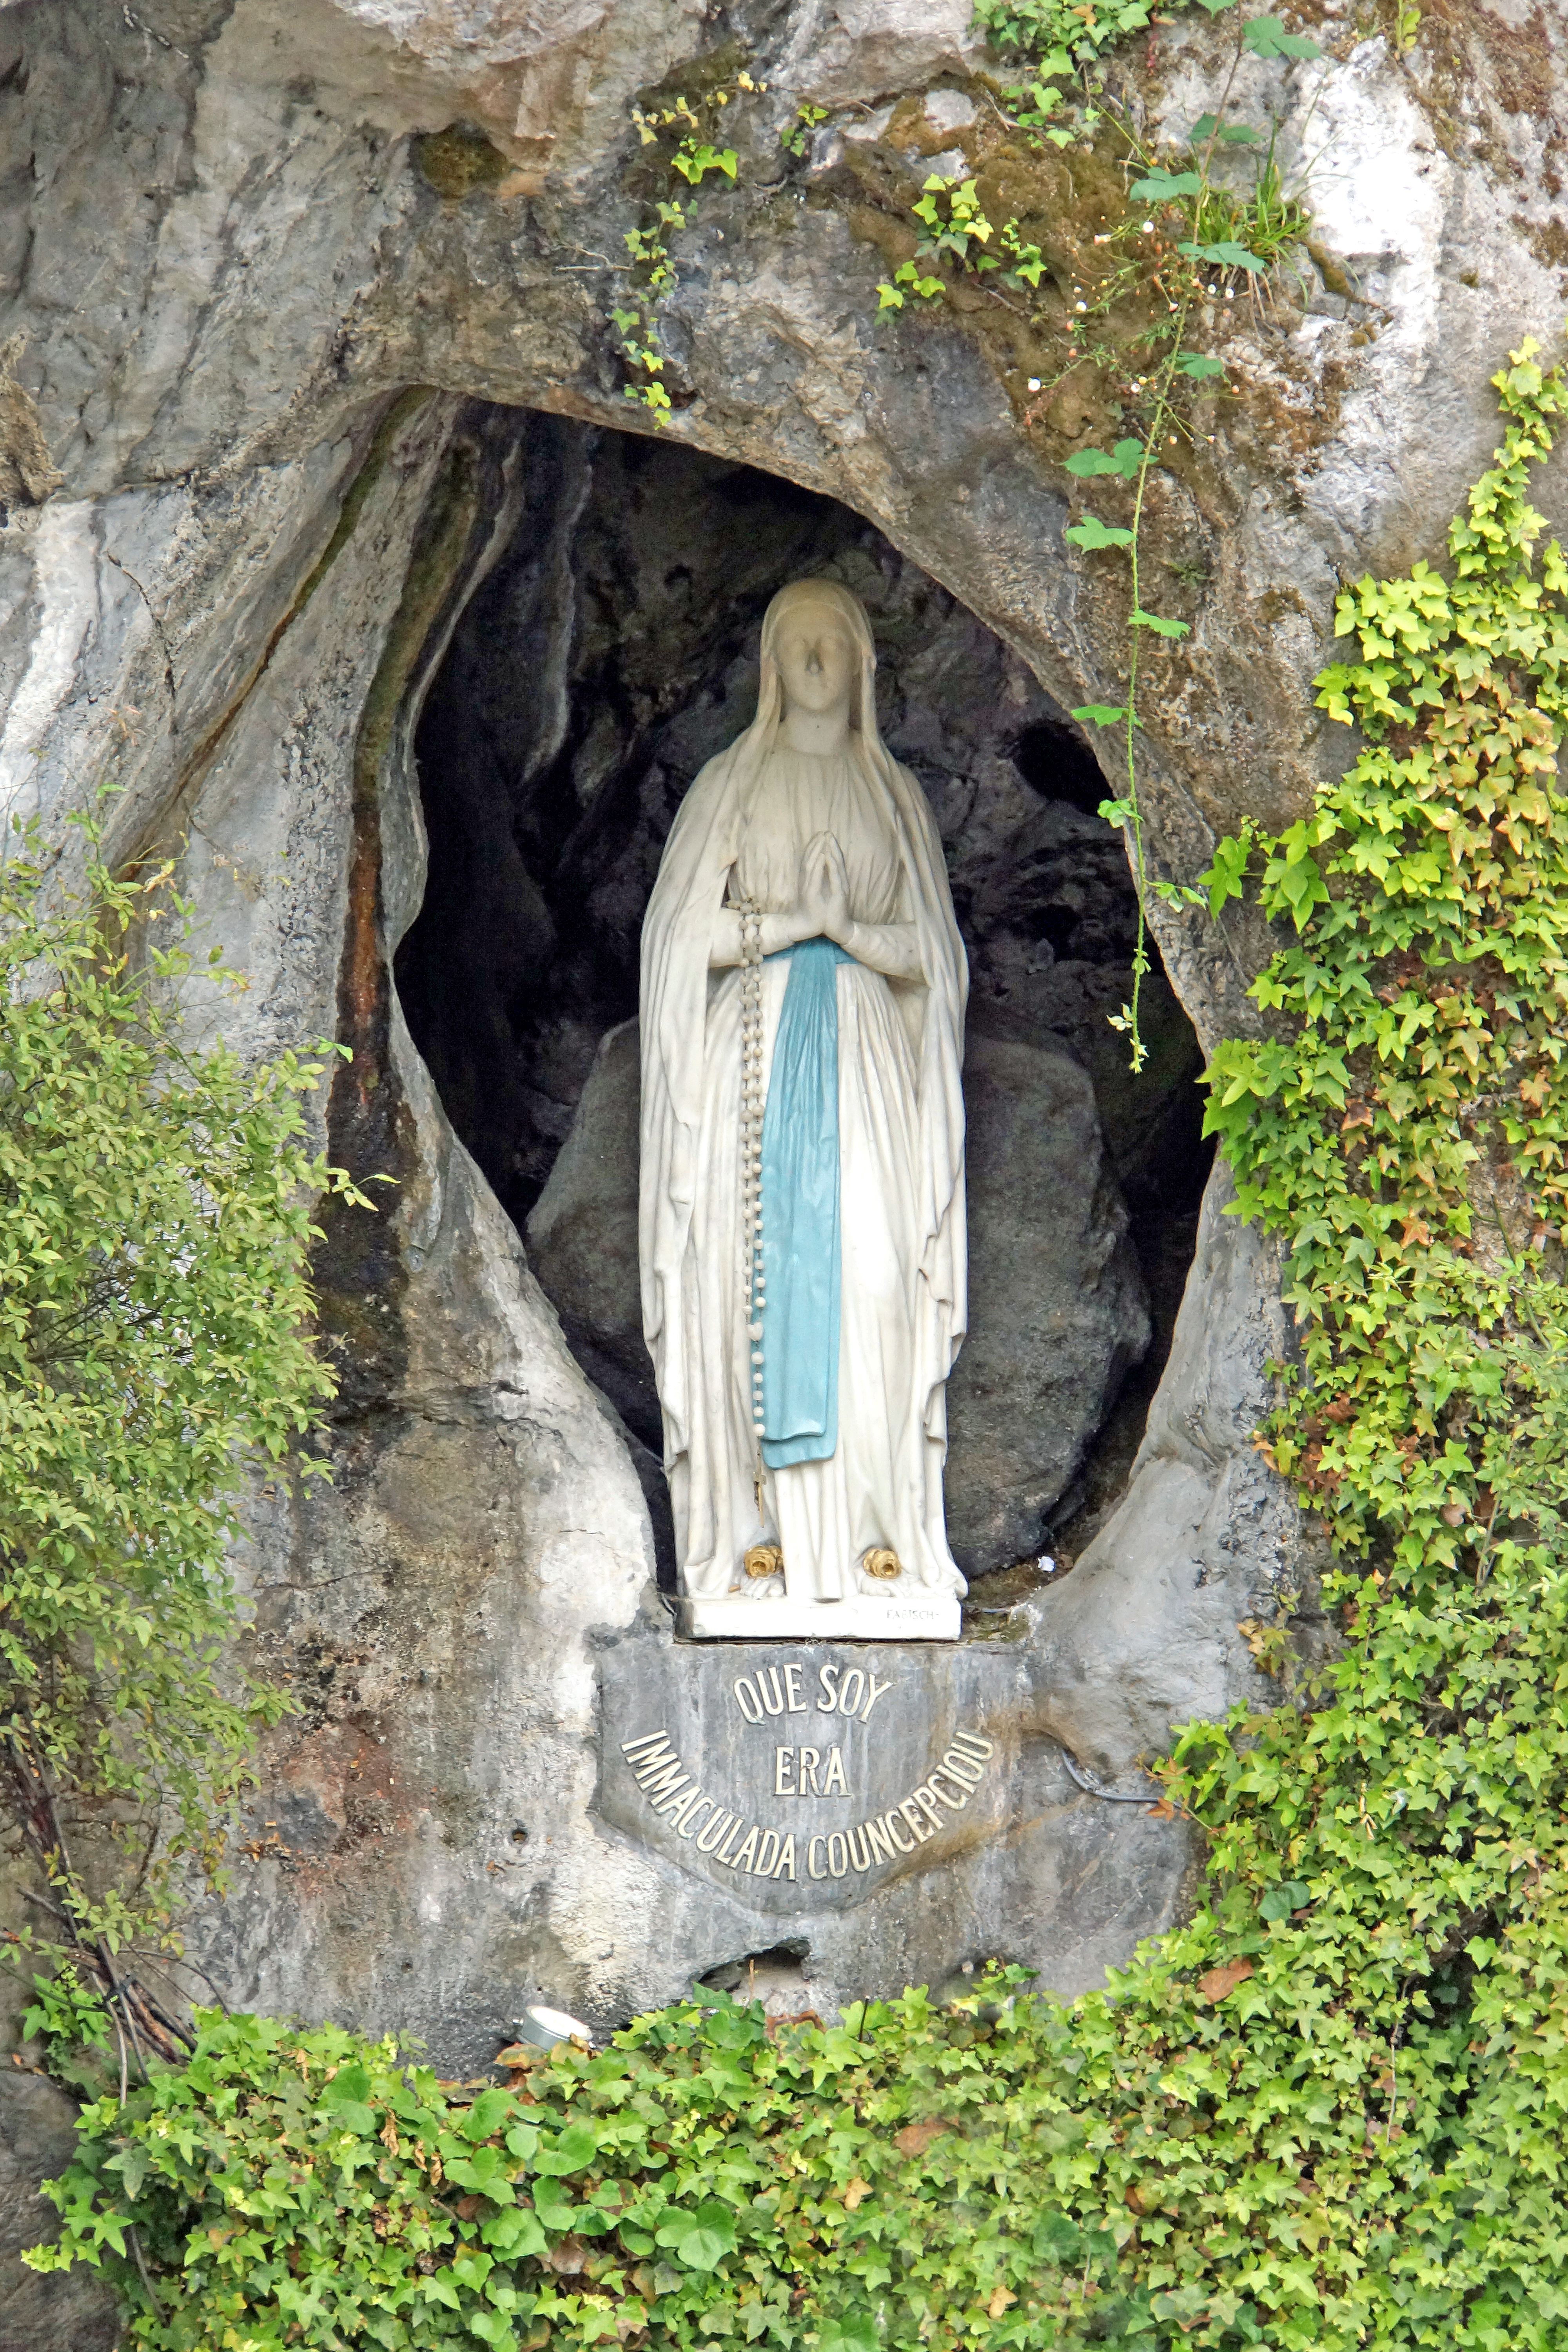 Lourdes virgin mary vision